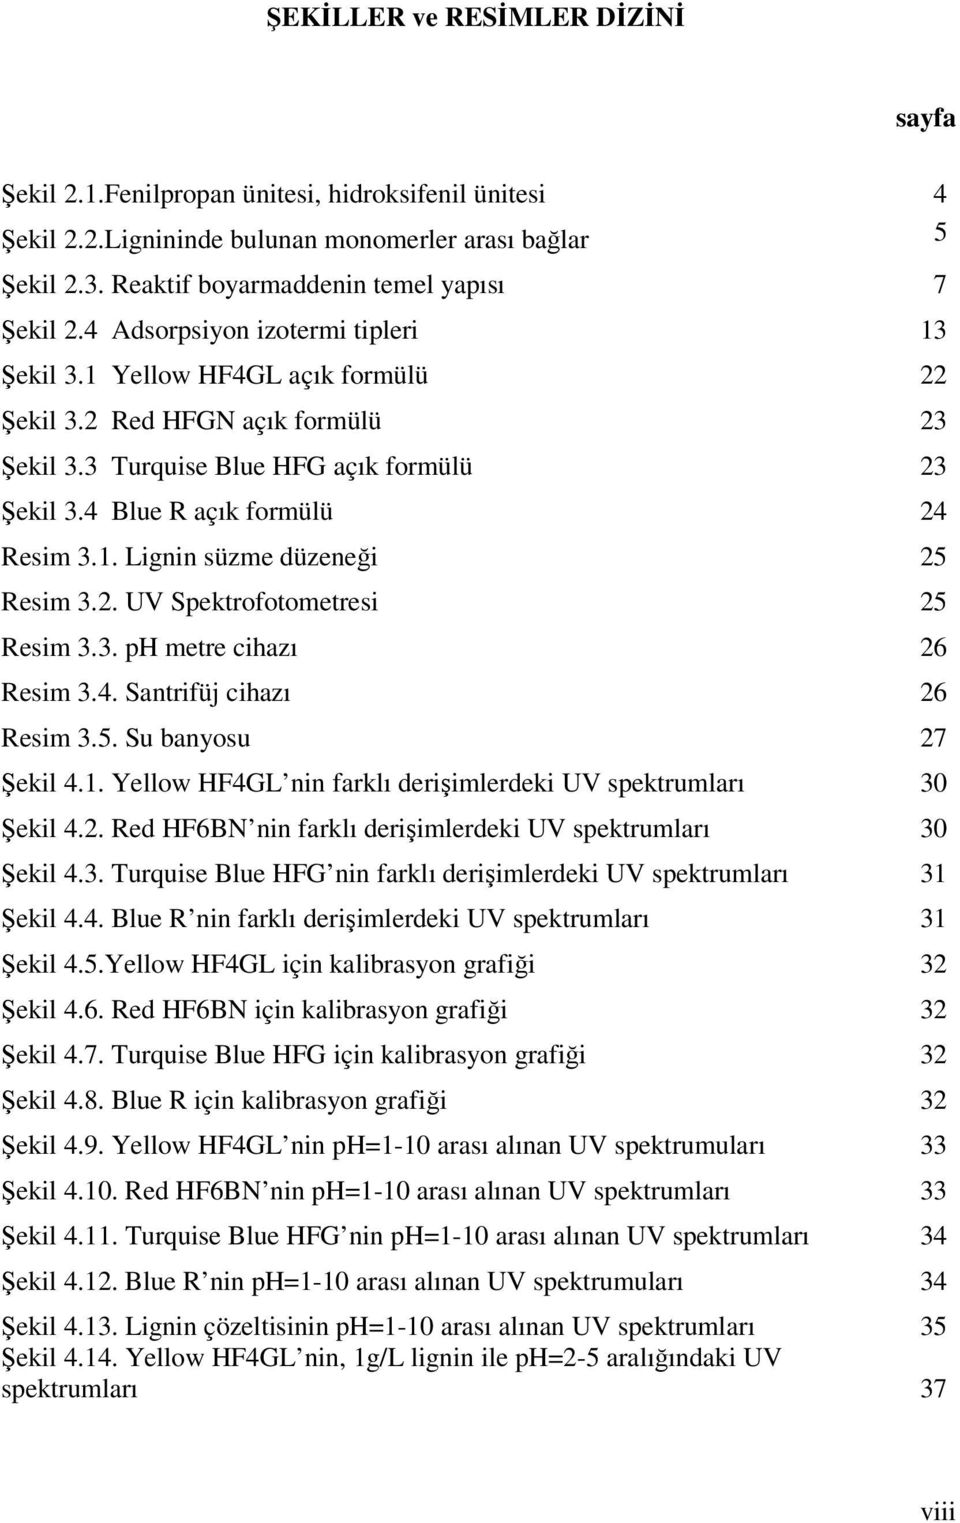 2. UV Spektrofotometresi 25 Resim 3.3. ph metre cihazı 26 Resim 3.4. Santrifüj cihazı 26 Resim 3.5. Su banyosu 27 Şekil 4.1. Yellow HF4GL nin farklı derişimlerdeki UV spektrumları 30 Şekil 4.2. Red HF6BN nin farklı derişimlerdeki UV spektrumları 30 Şekil 4.